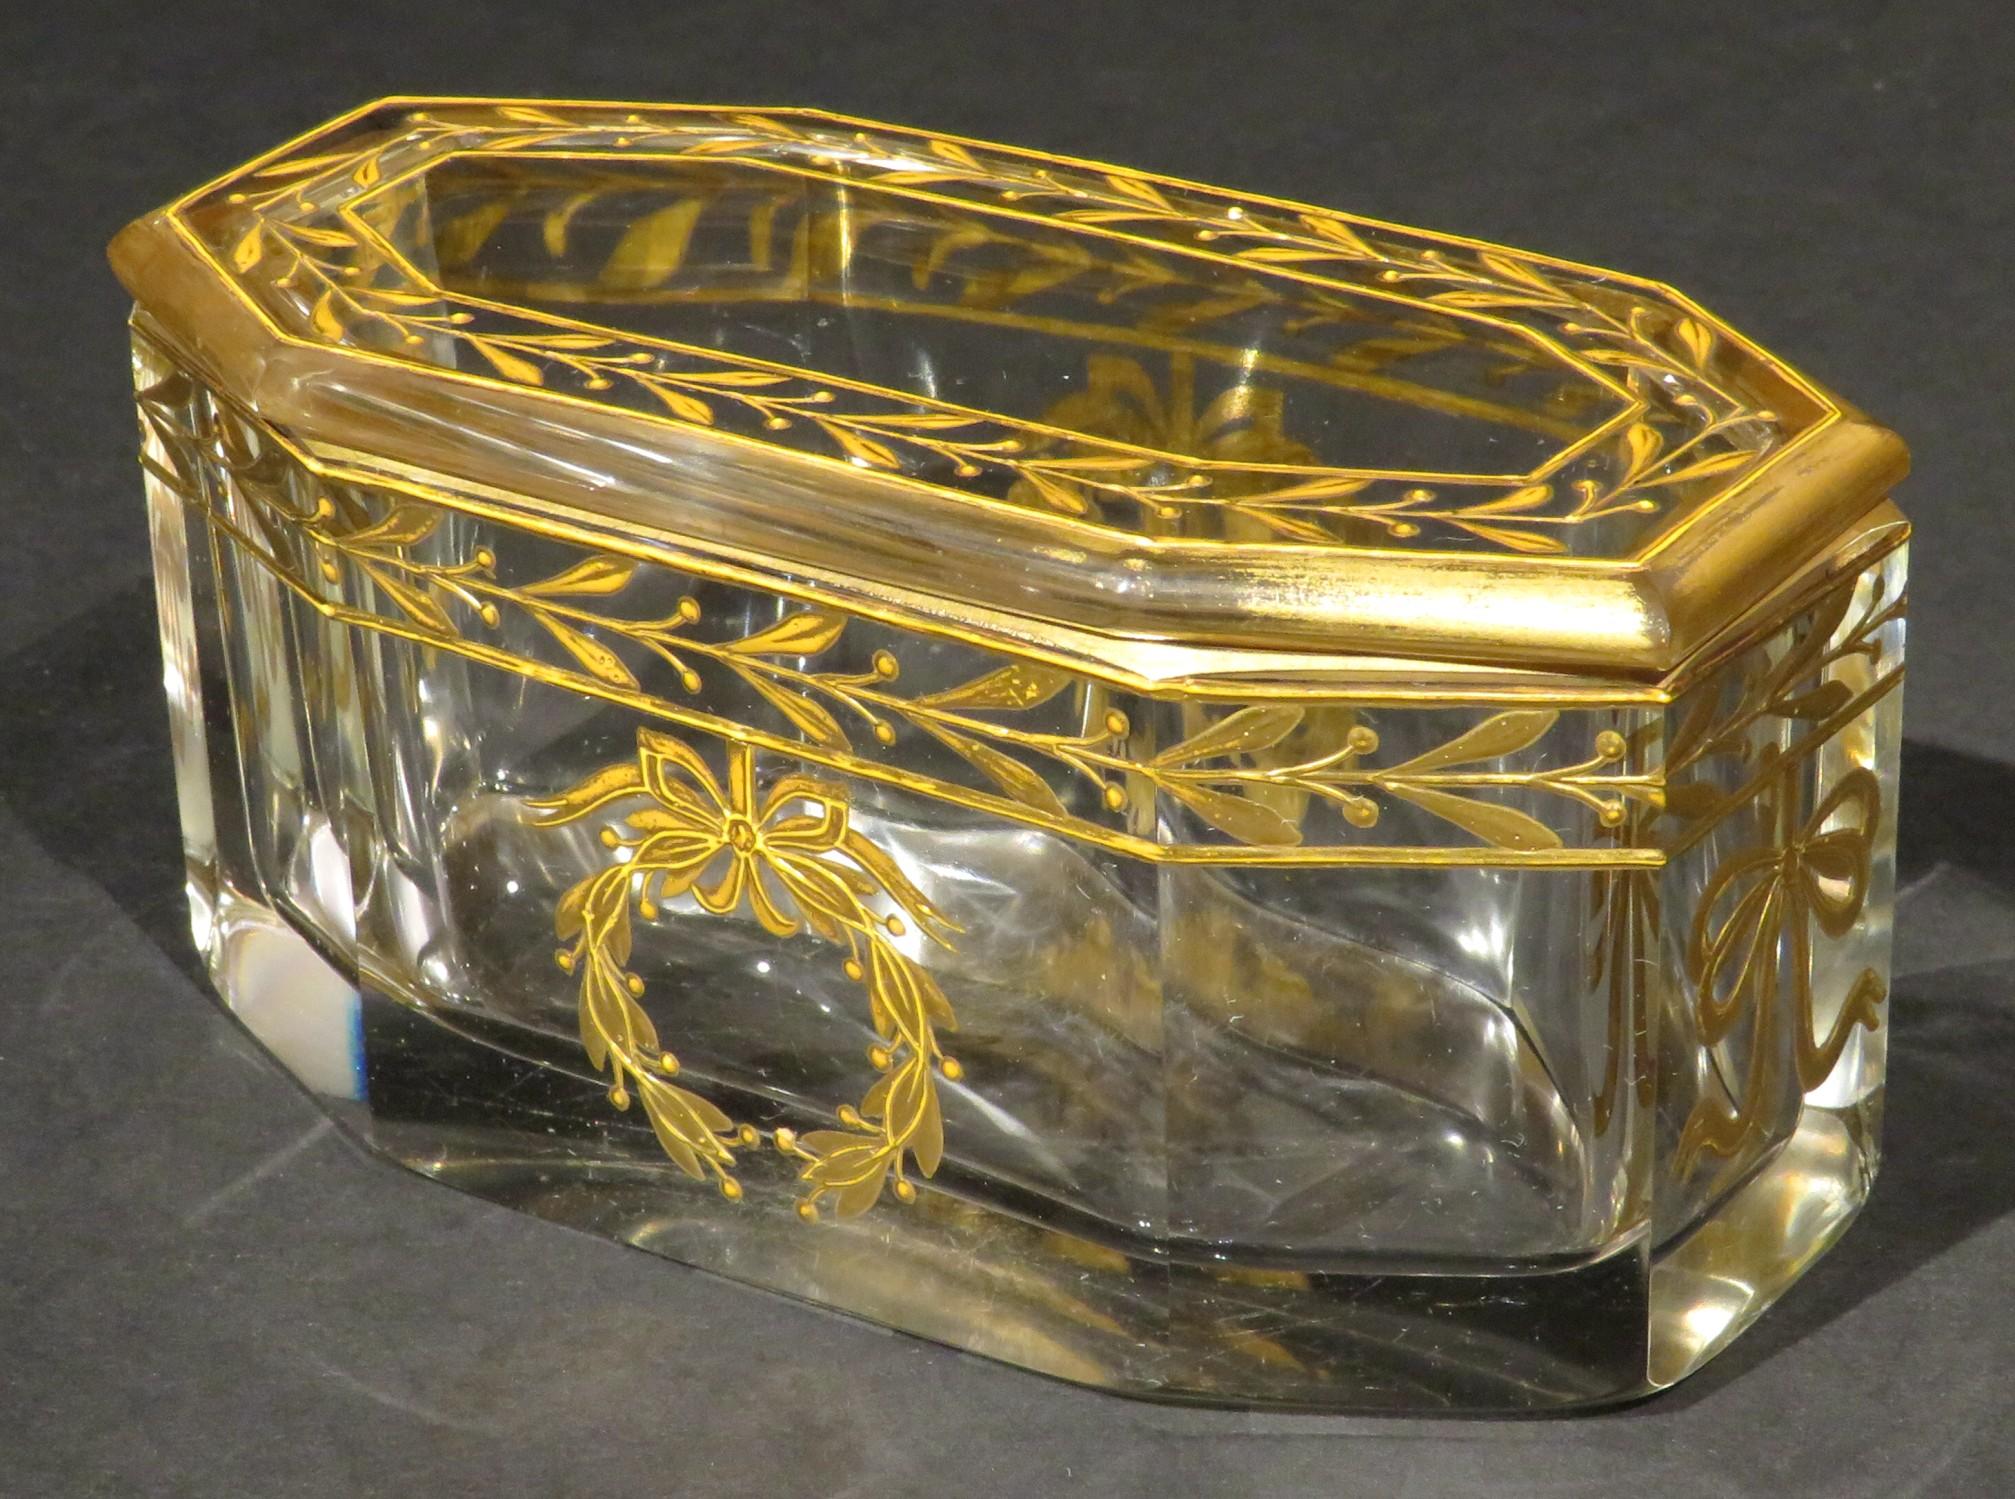 Très élégante boîte ou bocal en verre français du début du 20e siècle, présentant une base de forme rectangulaire à huit côtés munie d'un couvercle conforme, tous deux richement décorés de motifs dorés néoclassiques appliqués à la main.